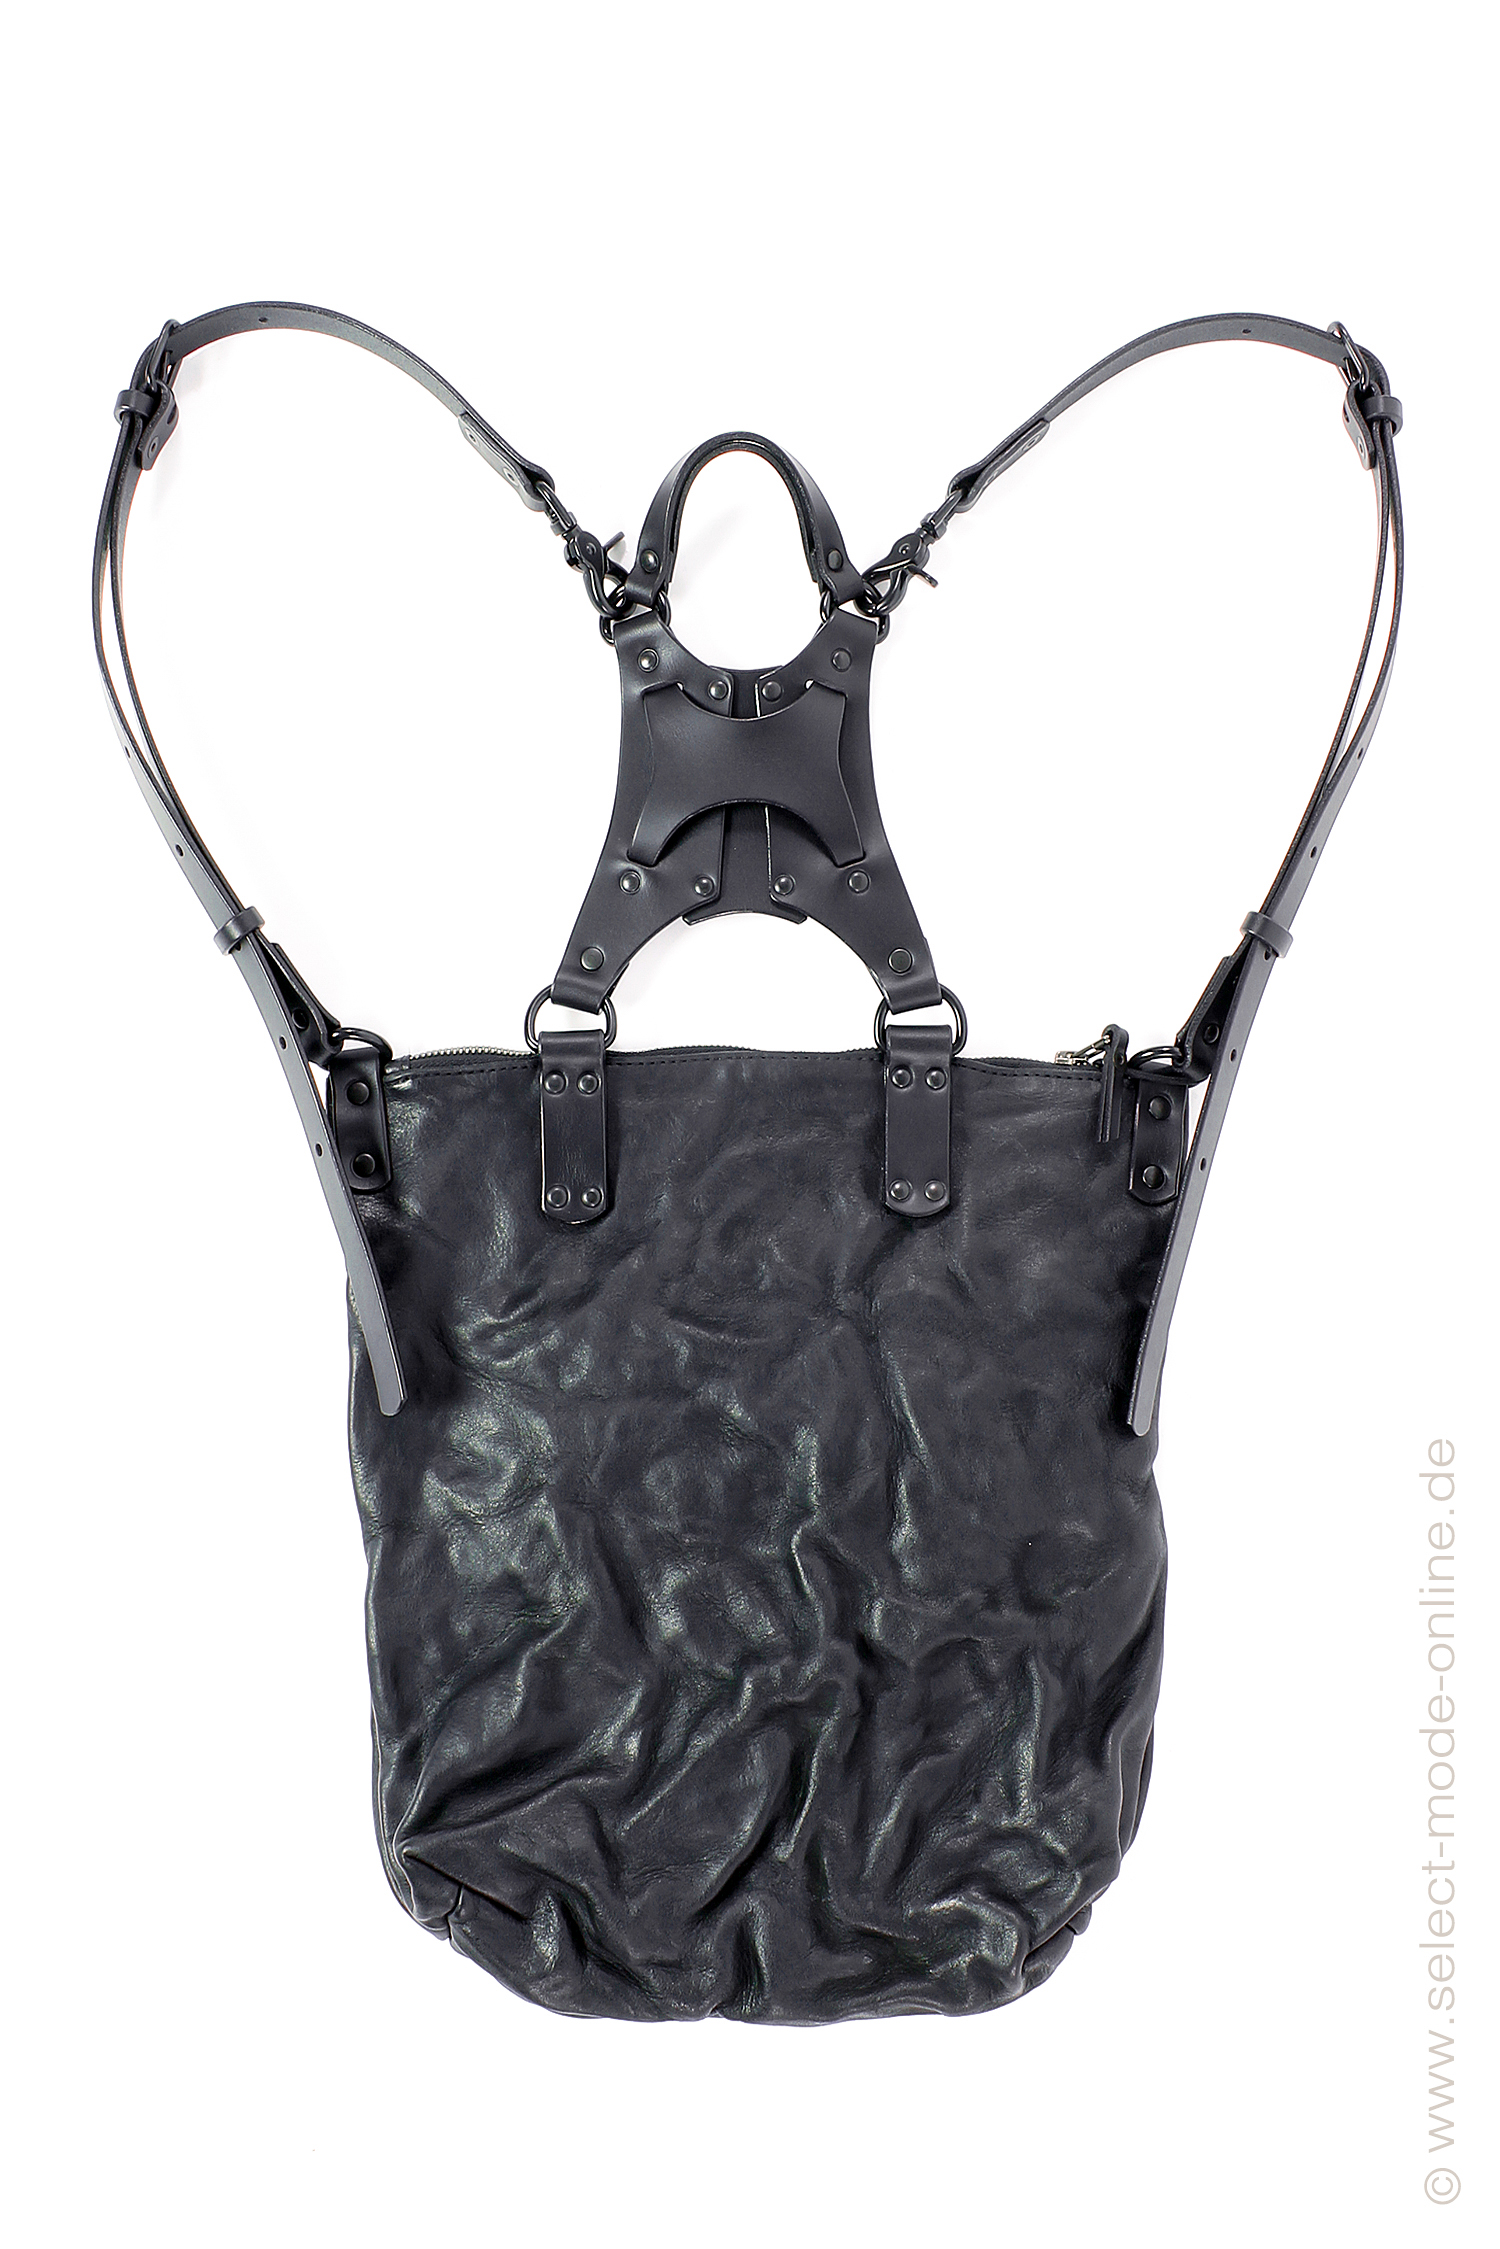 Leather backpack / shoulder bag - Uto leather - Black